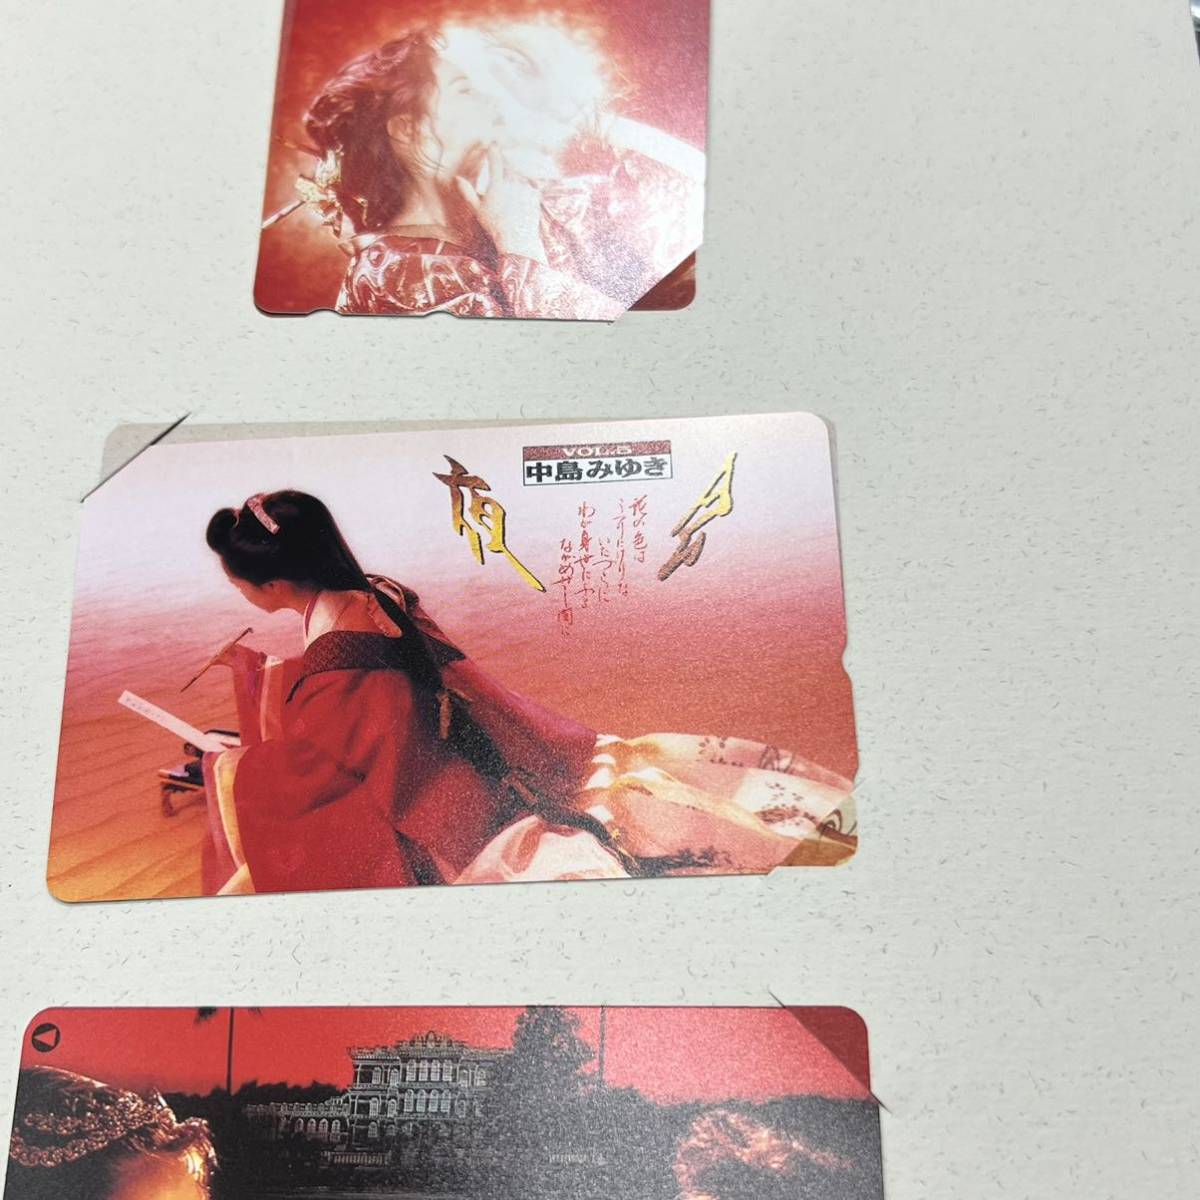  средний 8875/retapa свет / Nakajima Miyuki 6 шт. комплект 1989-1994 любитель освобождение телефонная карточка не использовался товар 